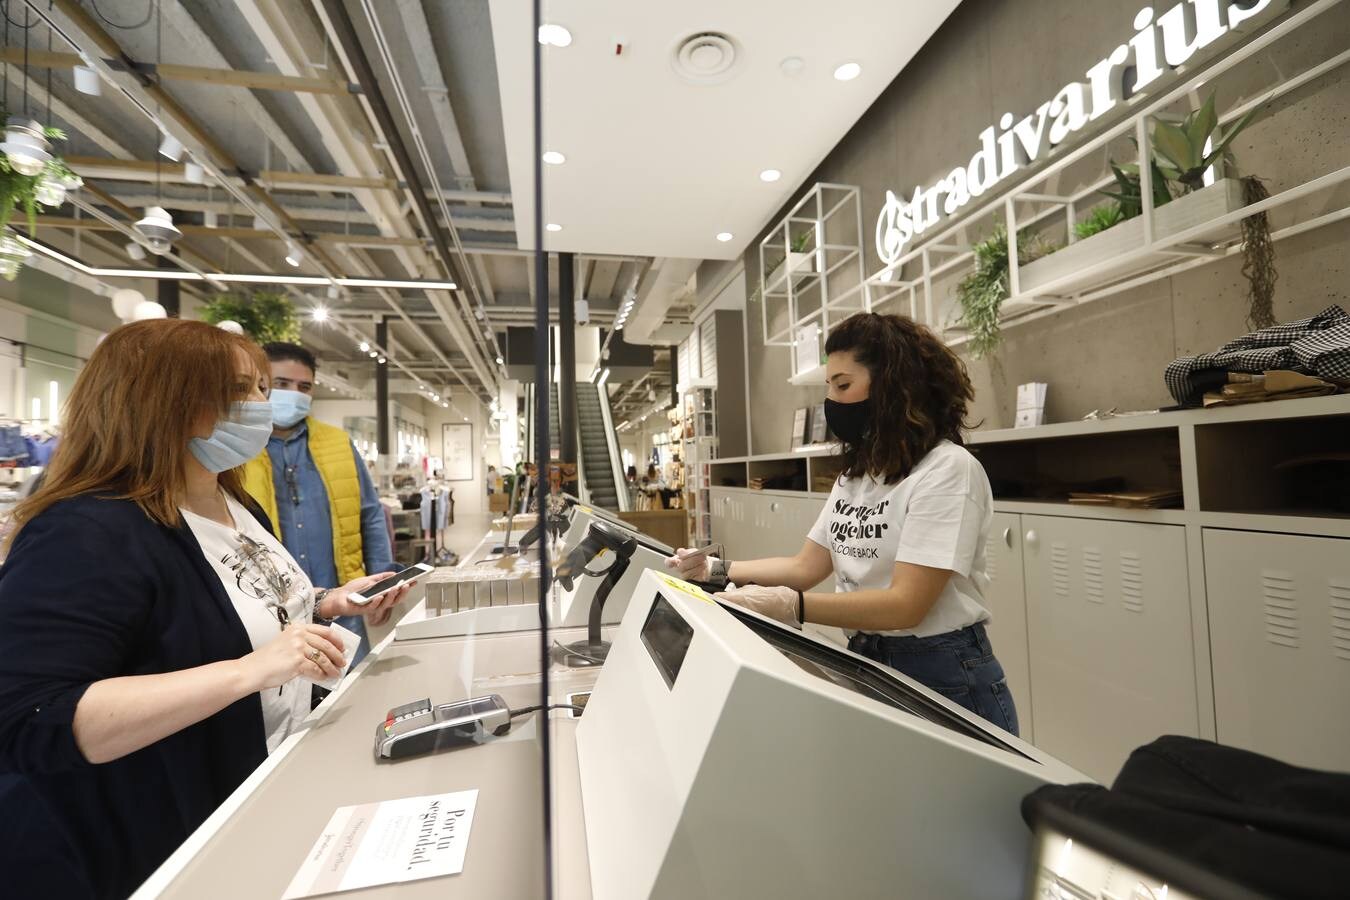 La apertura de tiendas en Córdoba de más de 400 metros, en imágenes